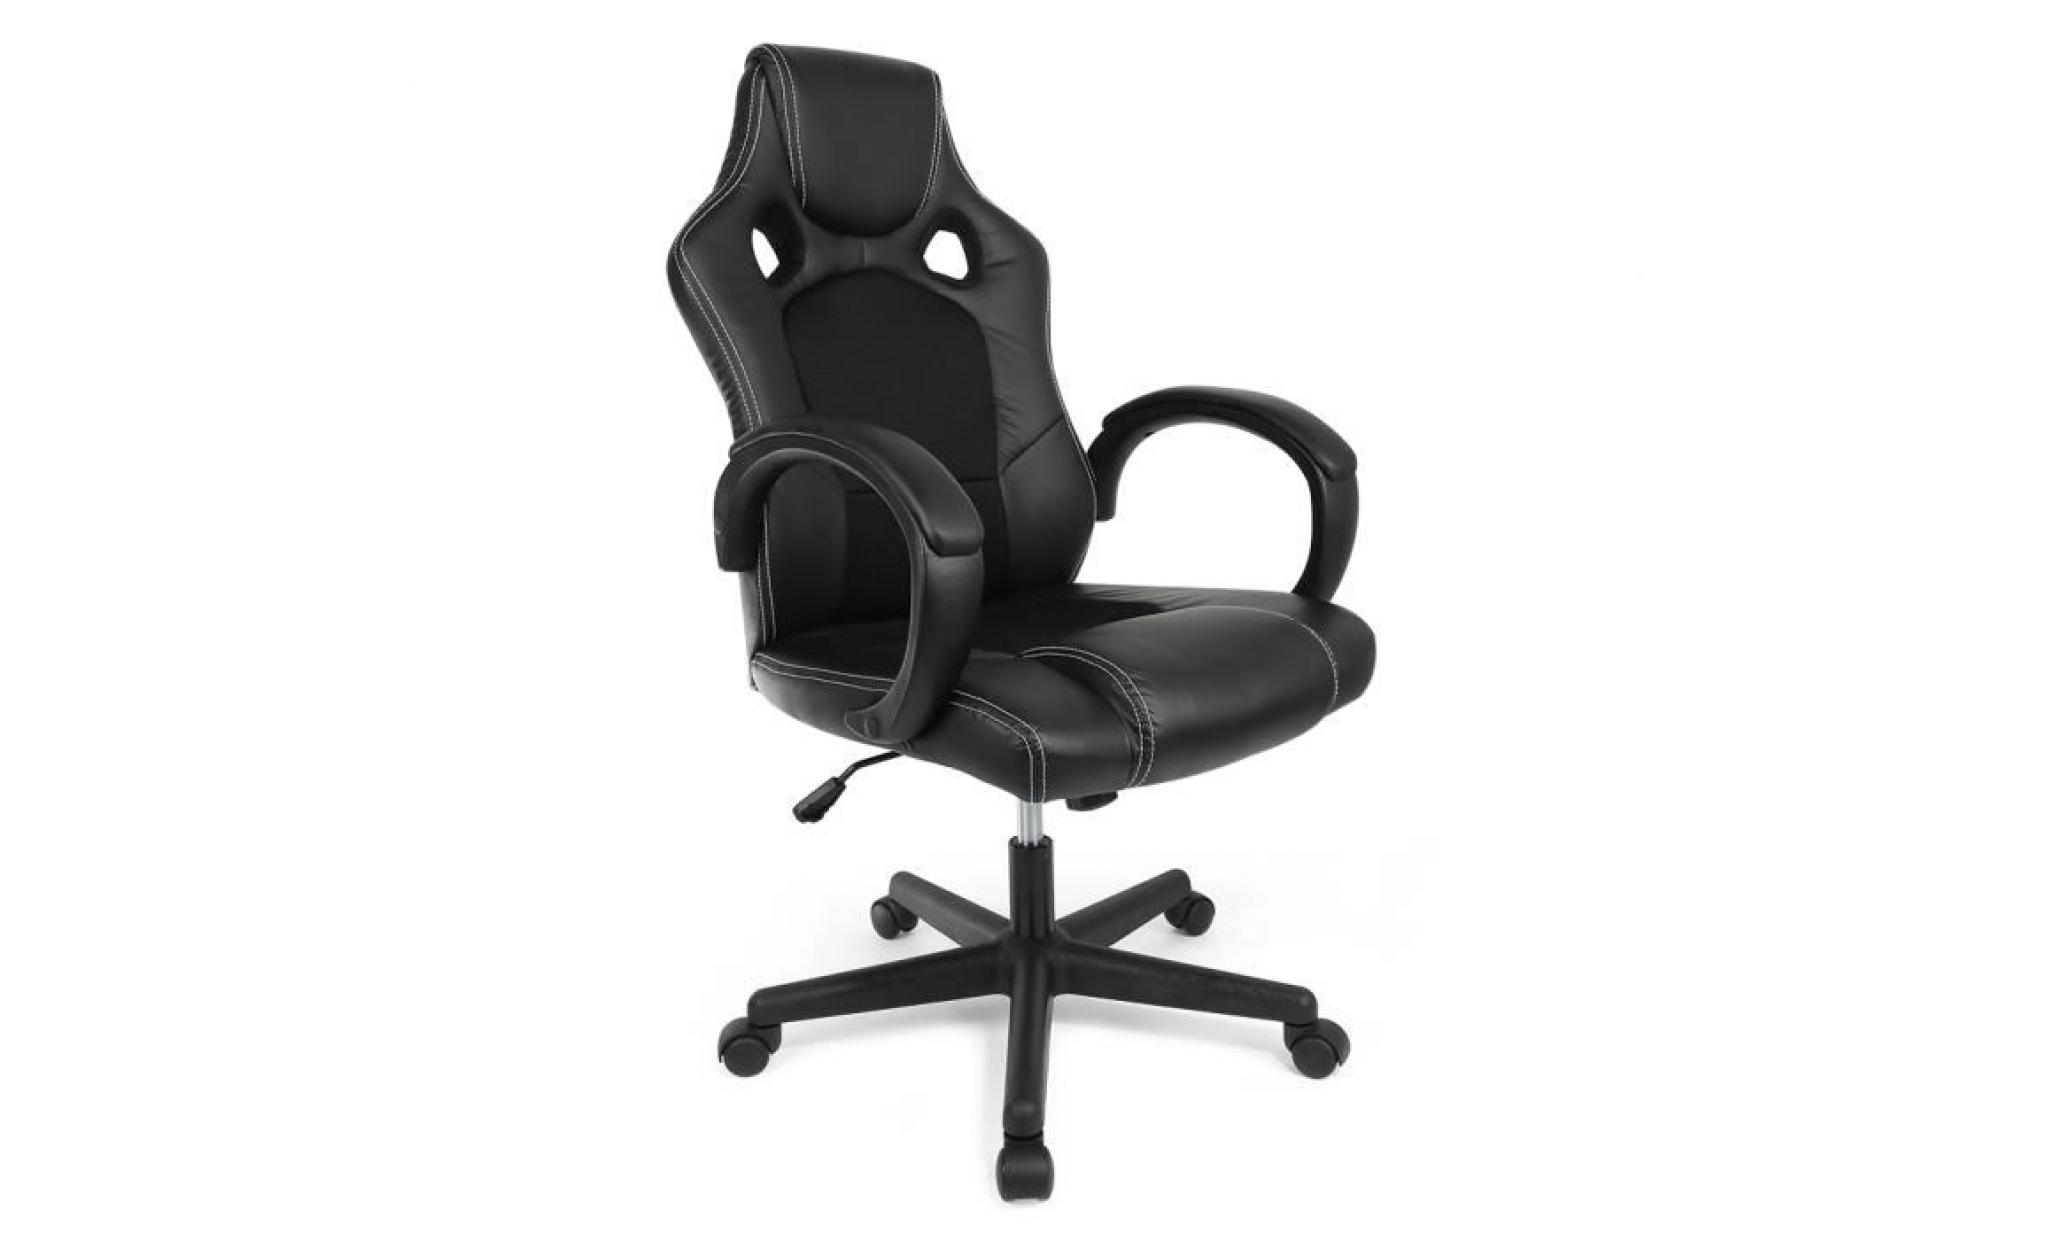 noir chaise fauteuil siege de bureau ergonomique accoudoirs rembourres, lift sgs controle